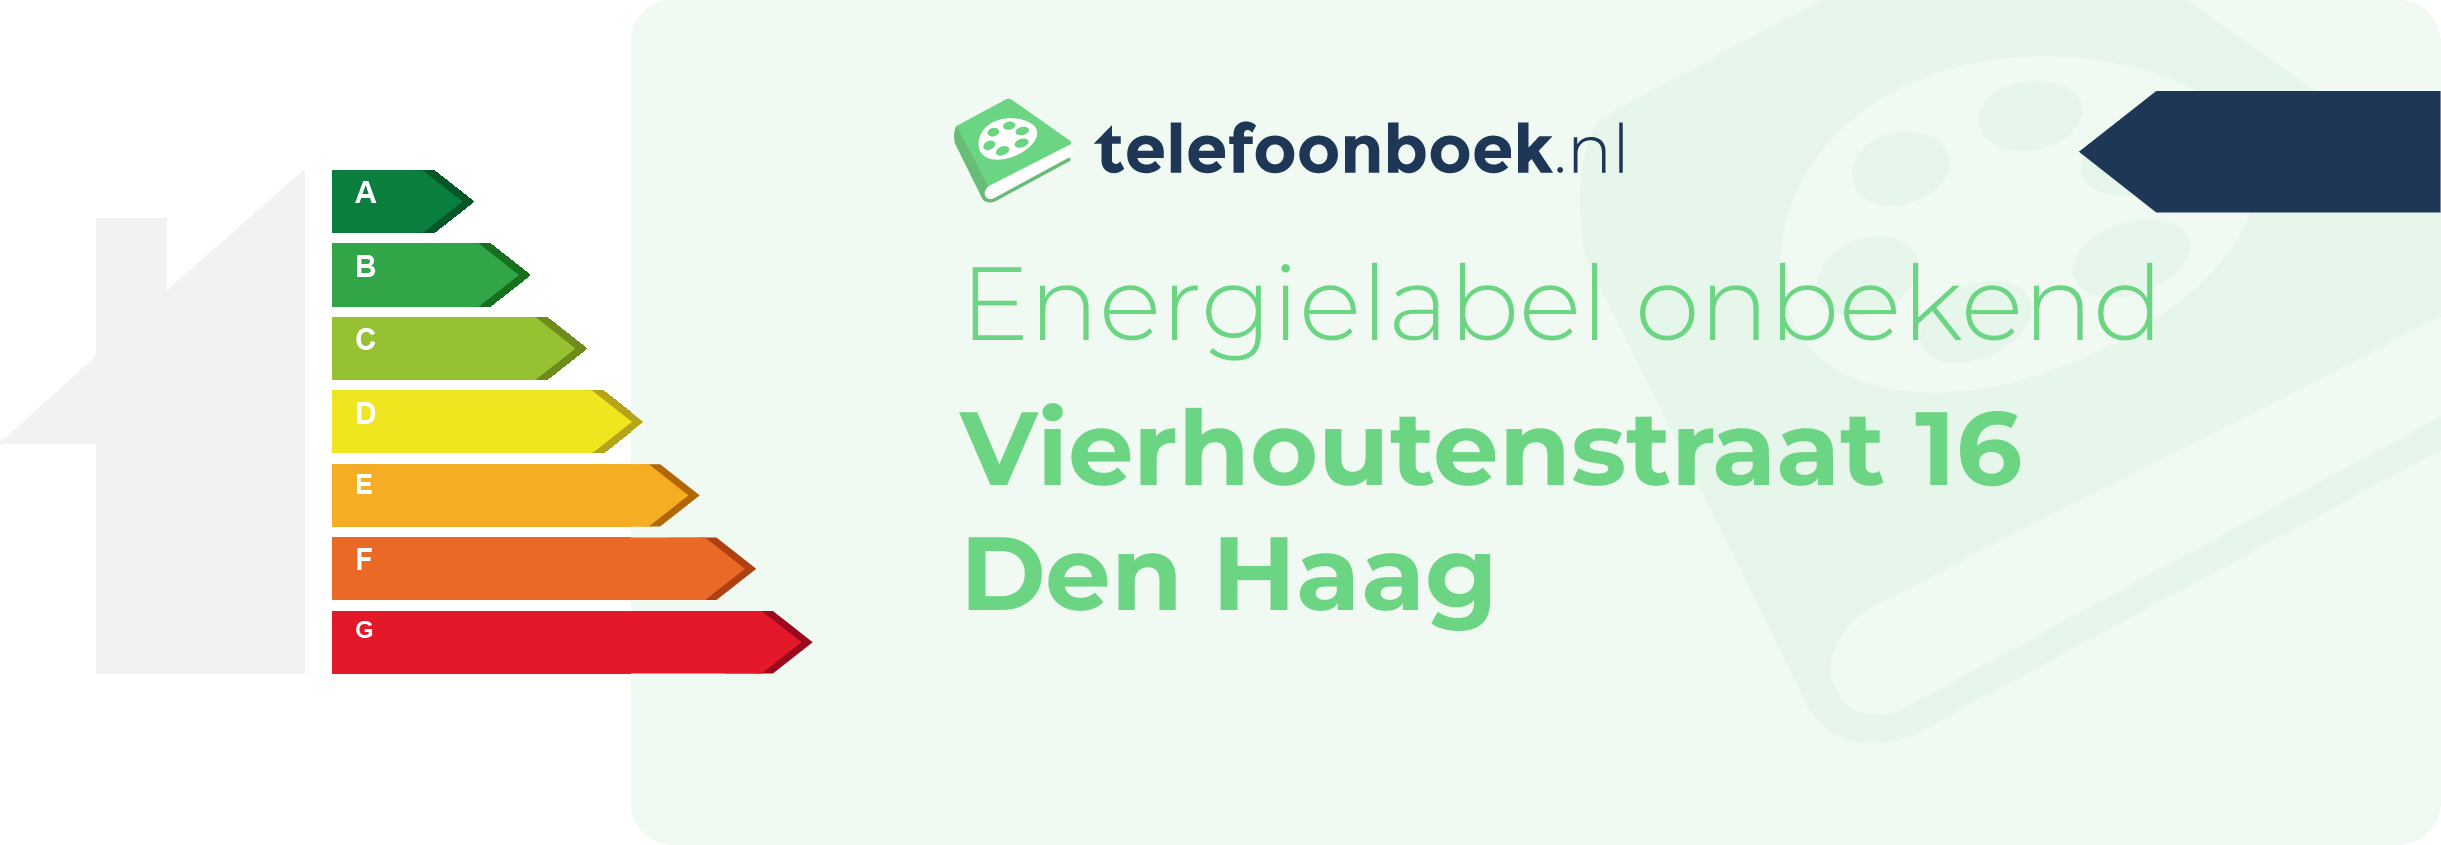 Energielabel Vierhoutenstraat 16 Den Haag